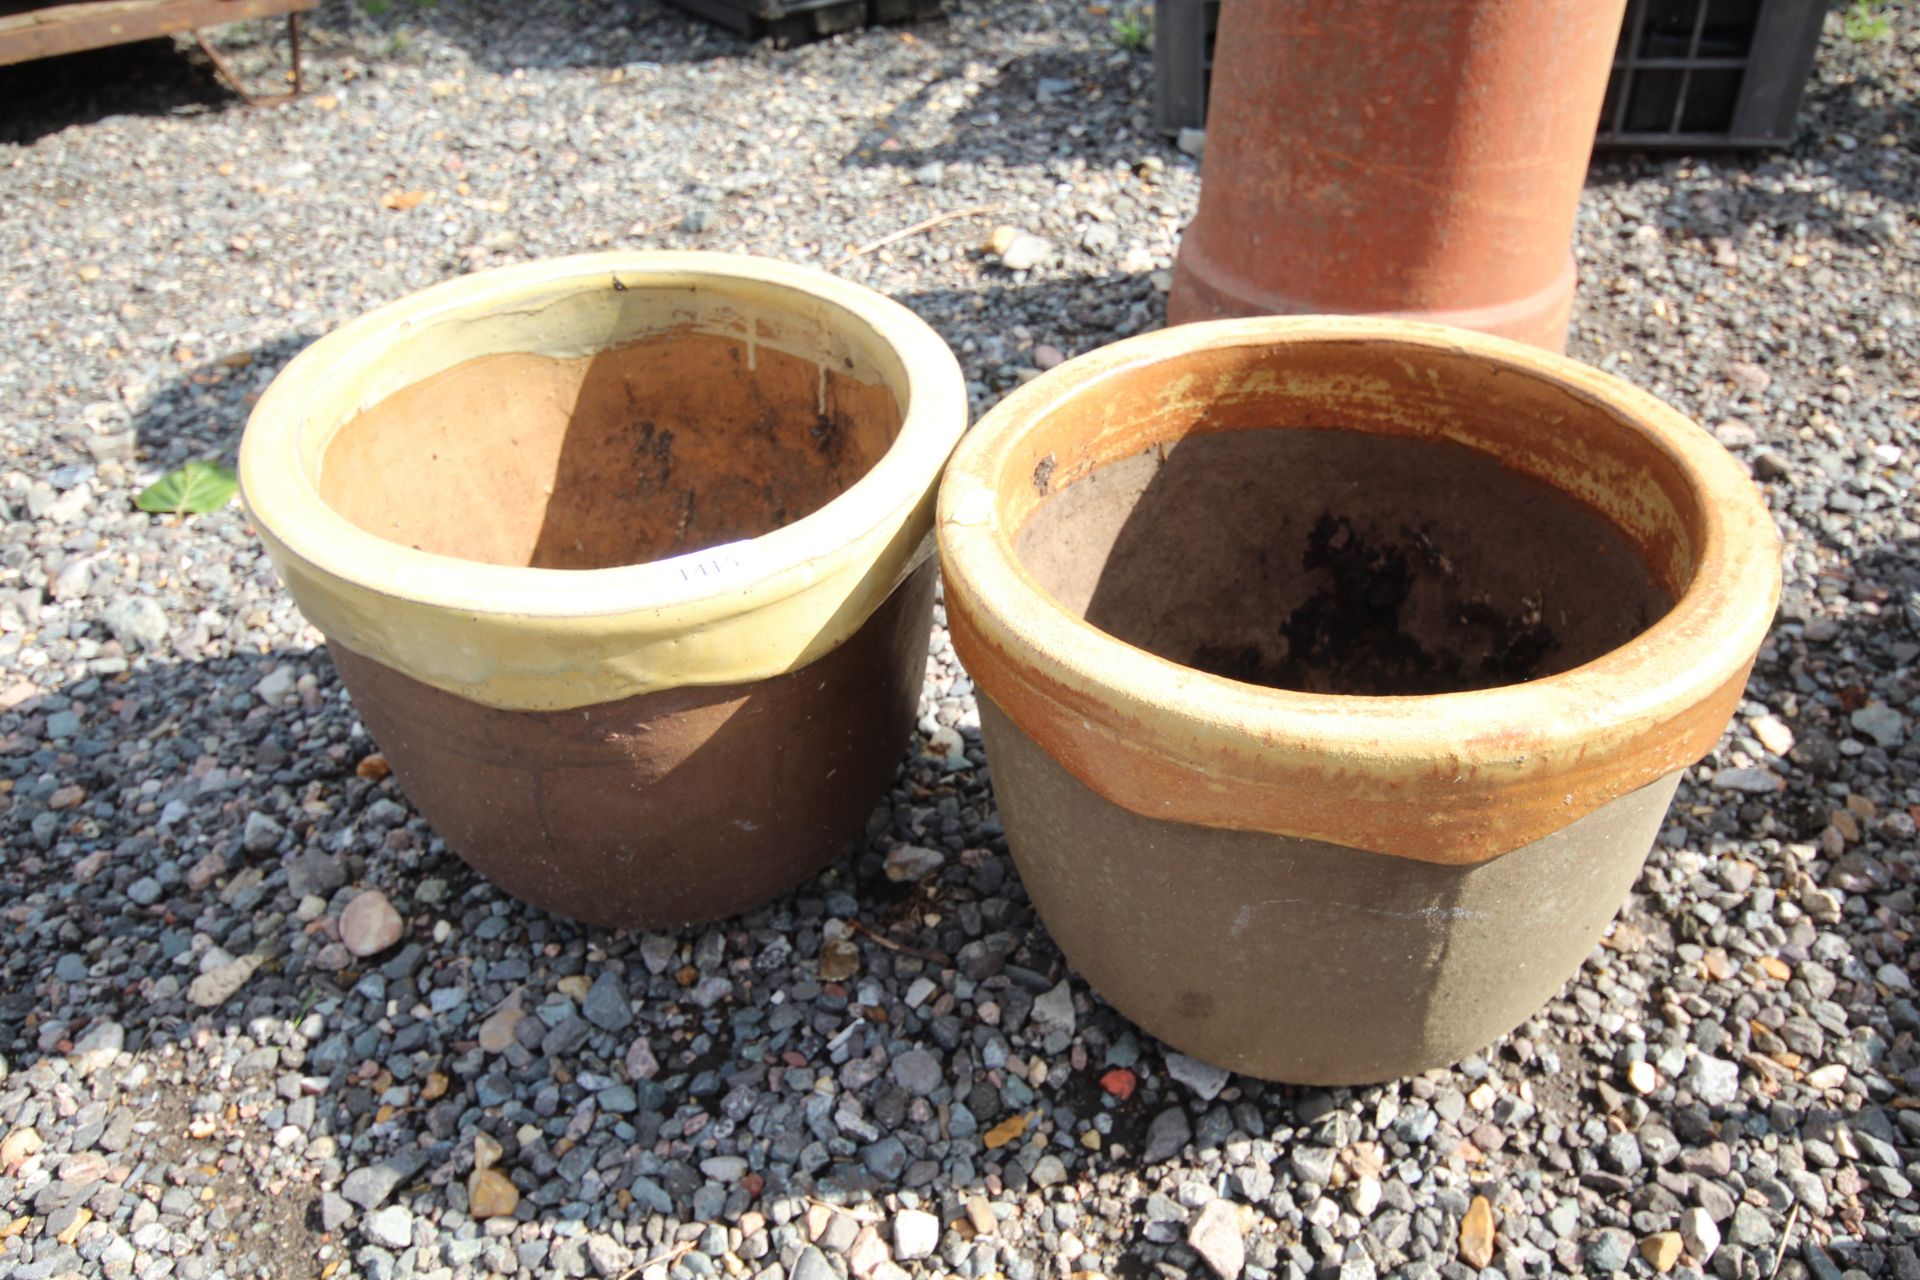 A pair of plant pots